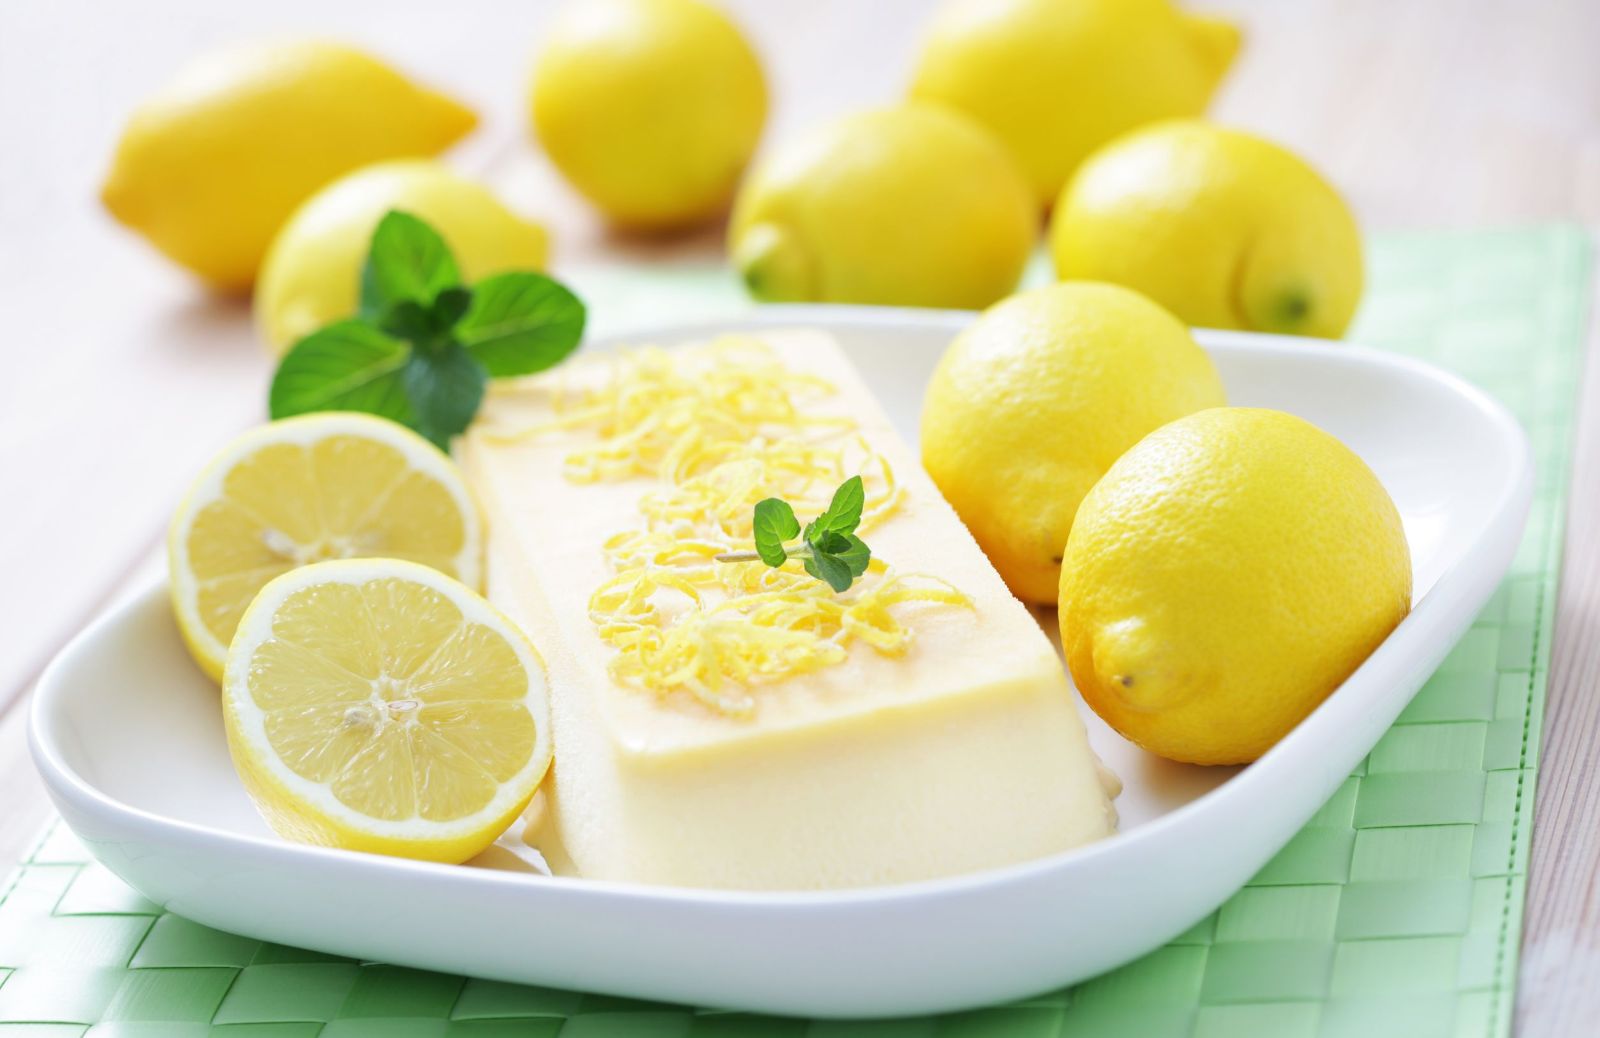 Semifreddo al limone, la ricetta facile e veloce